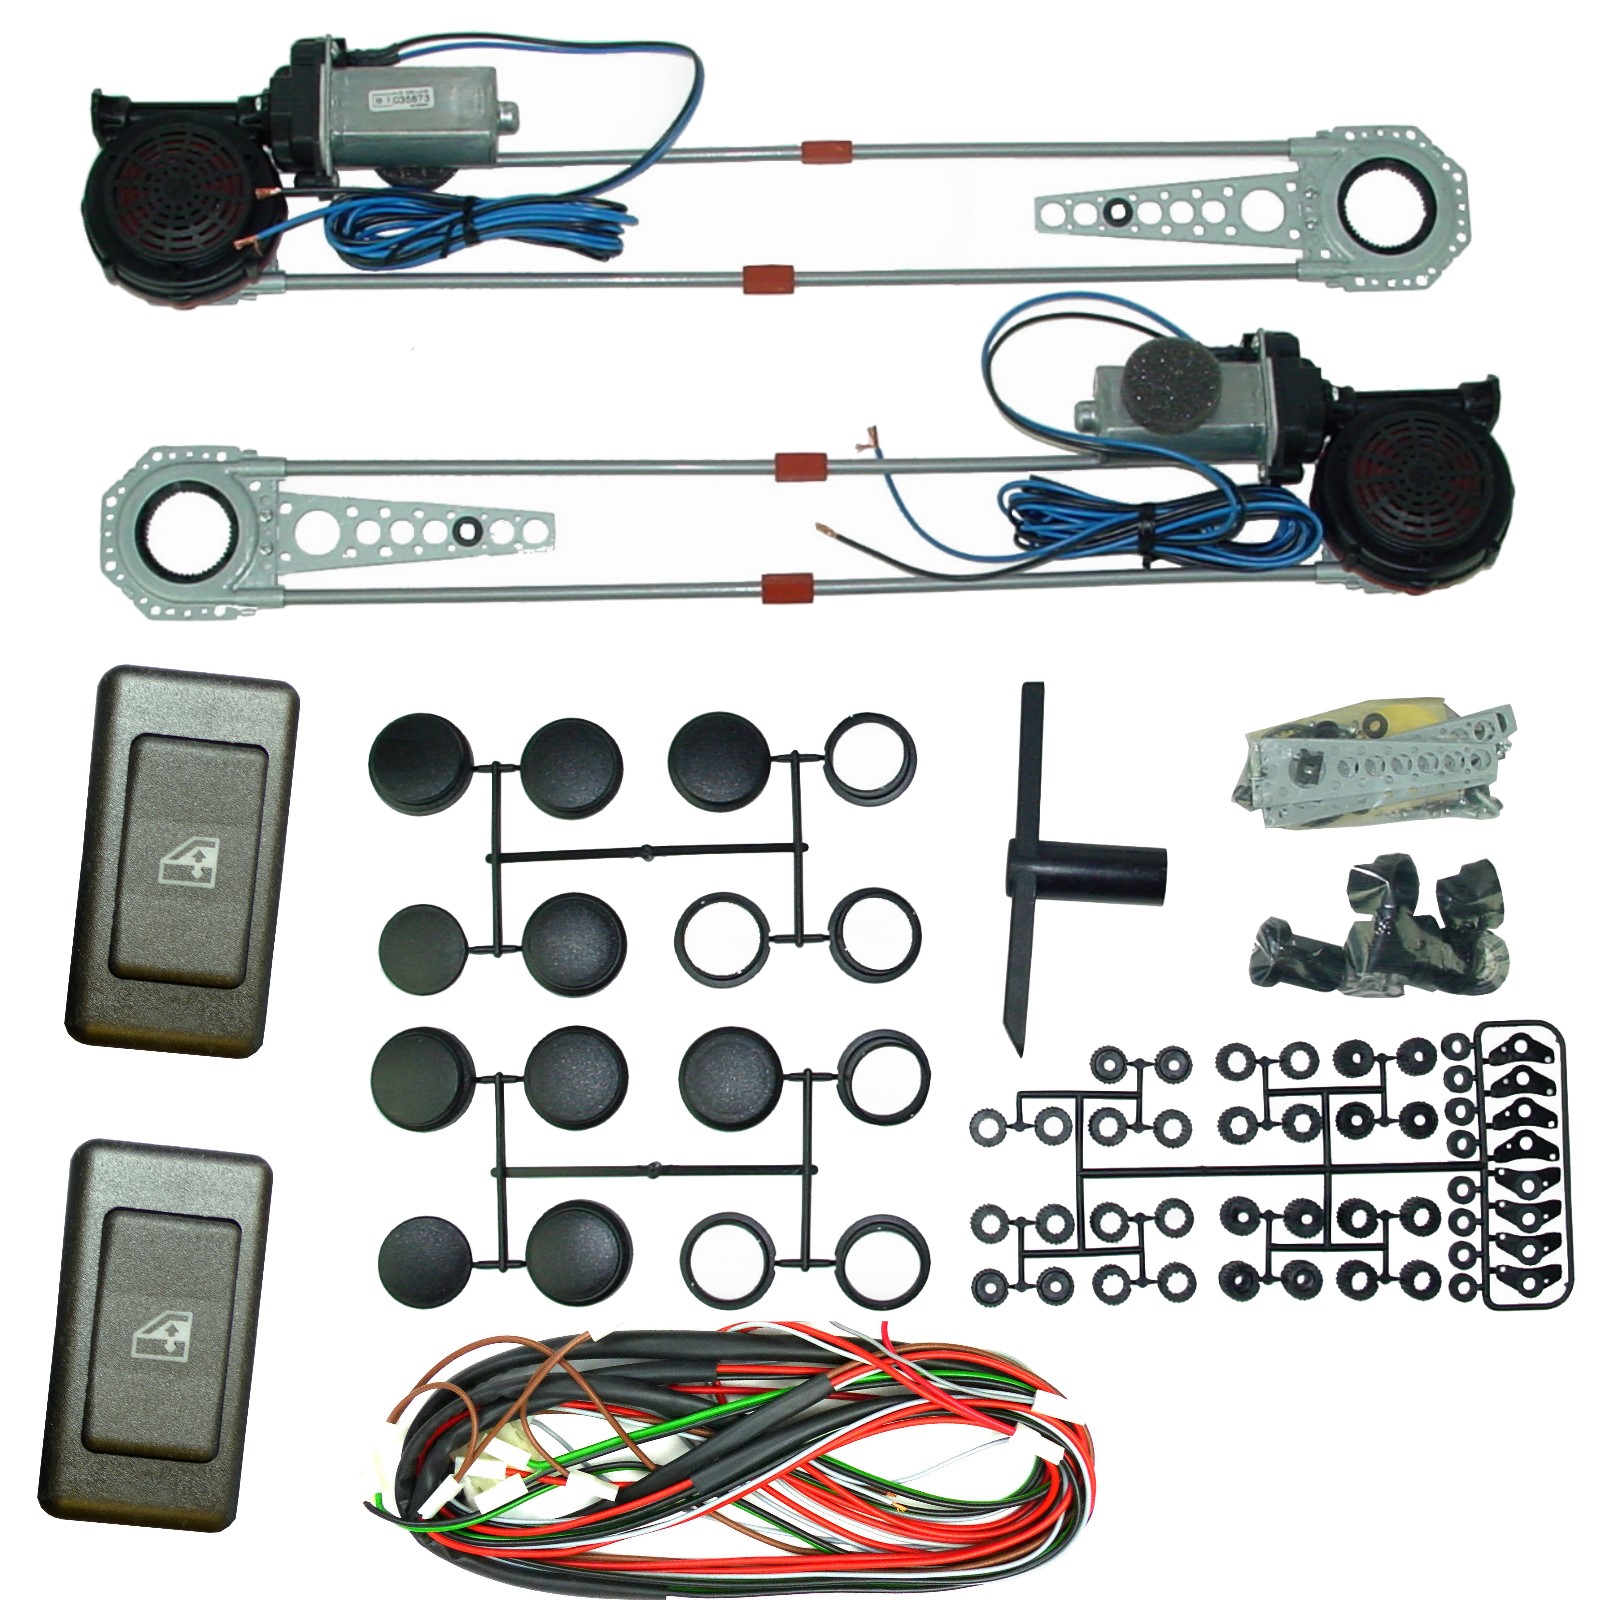 ALBACH - 1 Satz SPAL elektrische Fensterheber (2 Türen) incl. 2x Schalter  Typ 018 + Kabelsatz NEU für viele Fahrzeuge geeignet